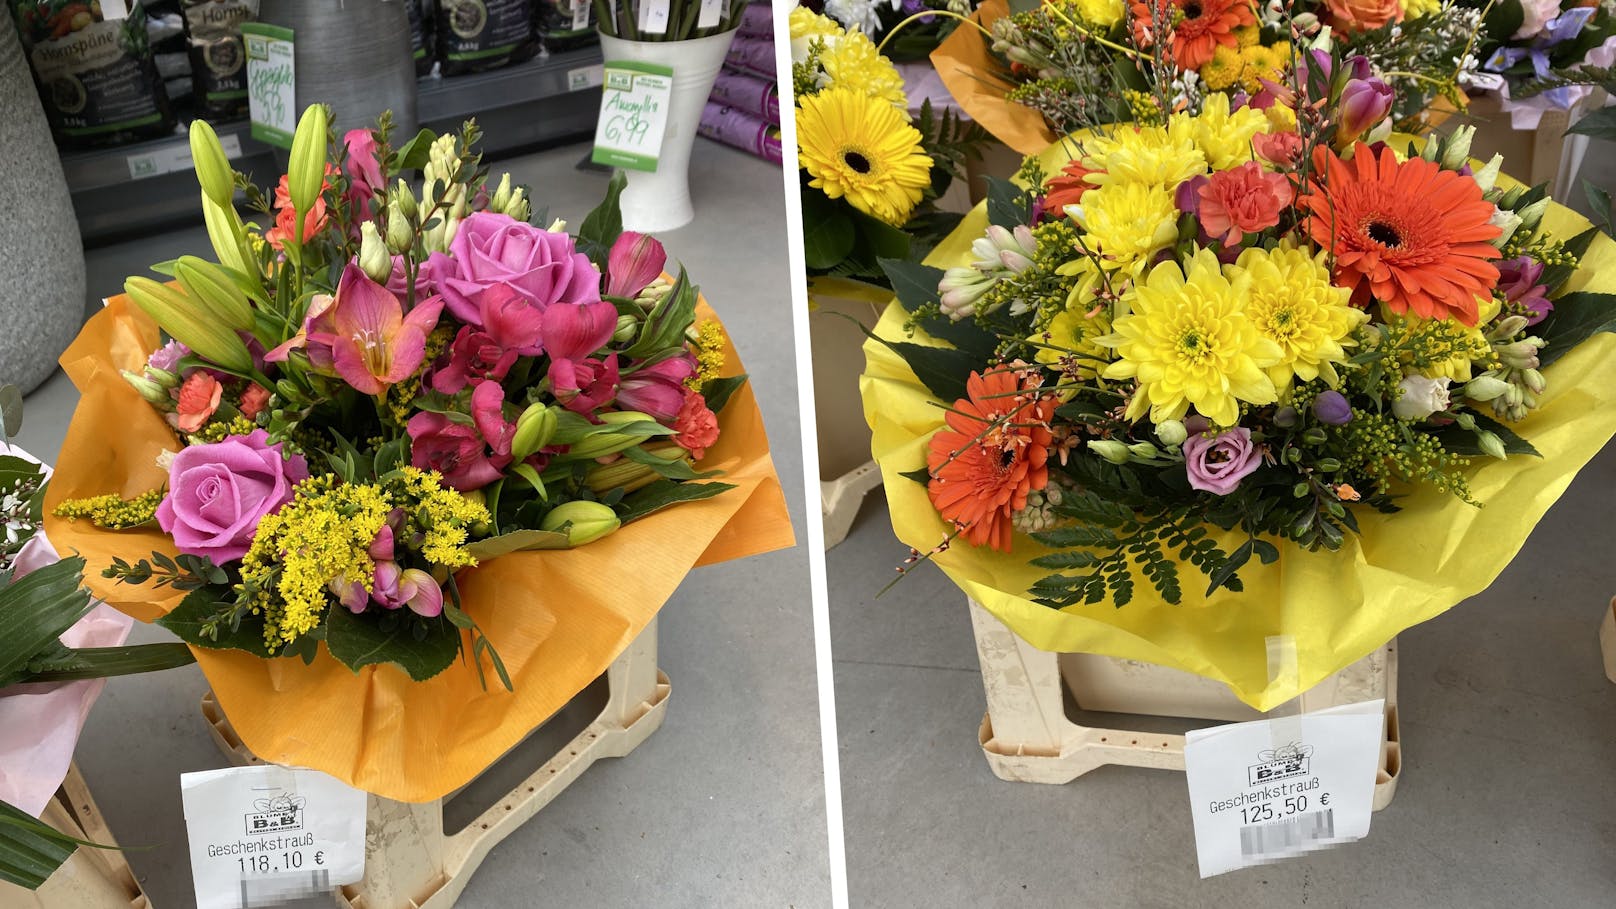 125€ für Blumen! Mann kocht am Tag der Liebe vor Wut